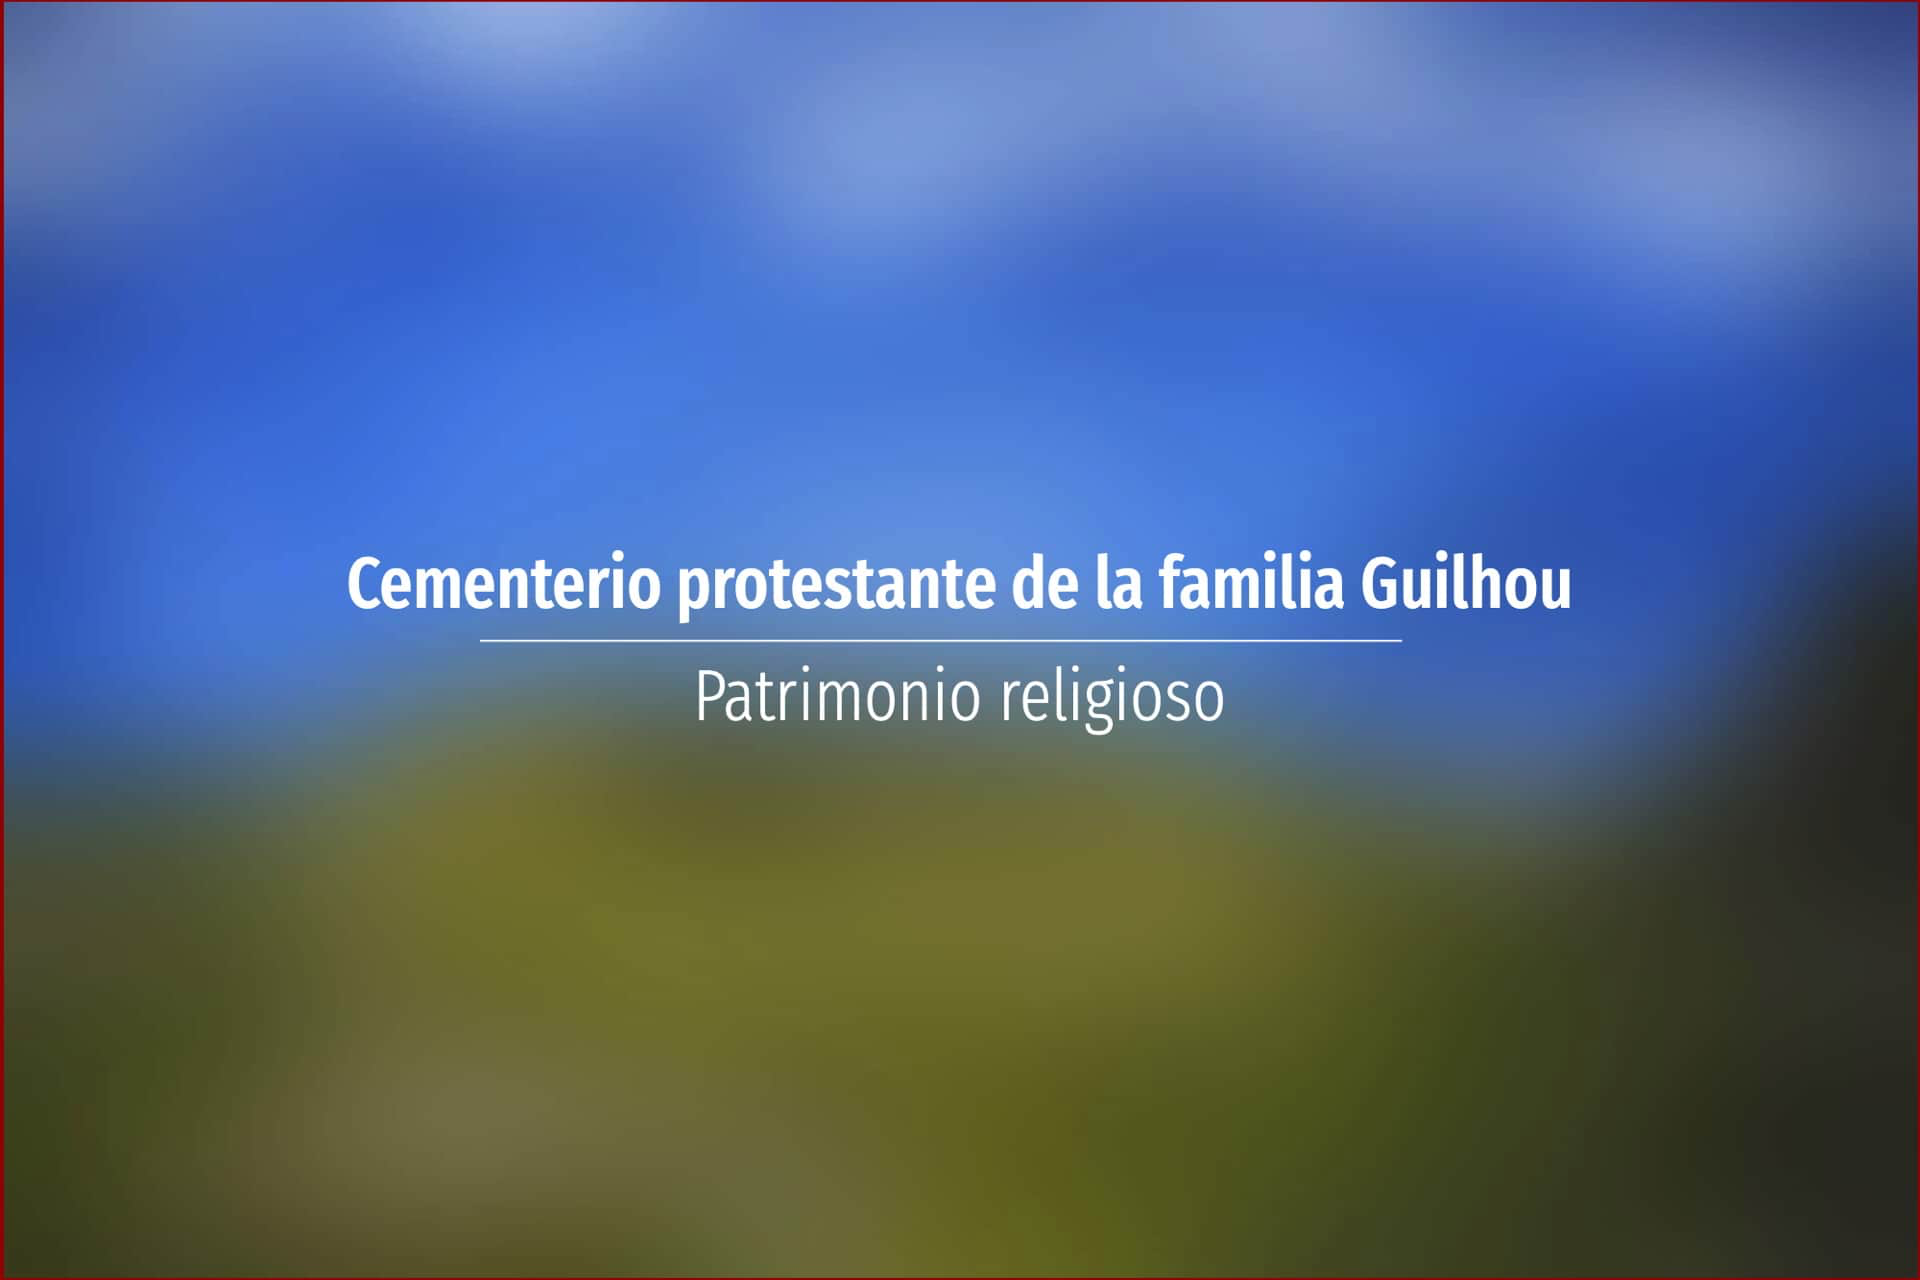 Cementerio protestante de la familia Guilhou